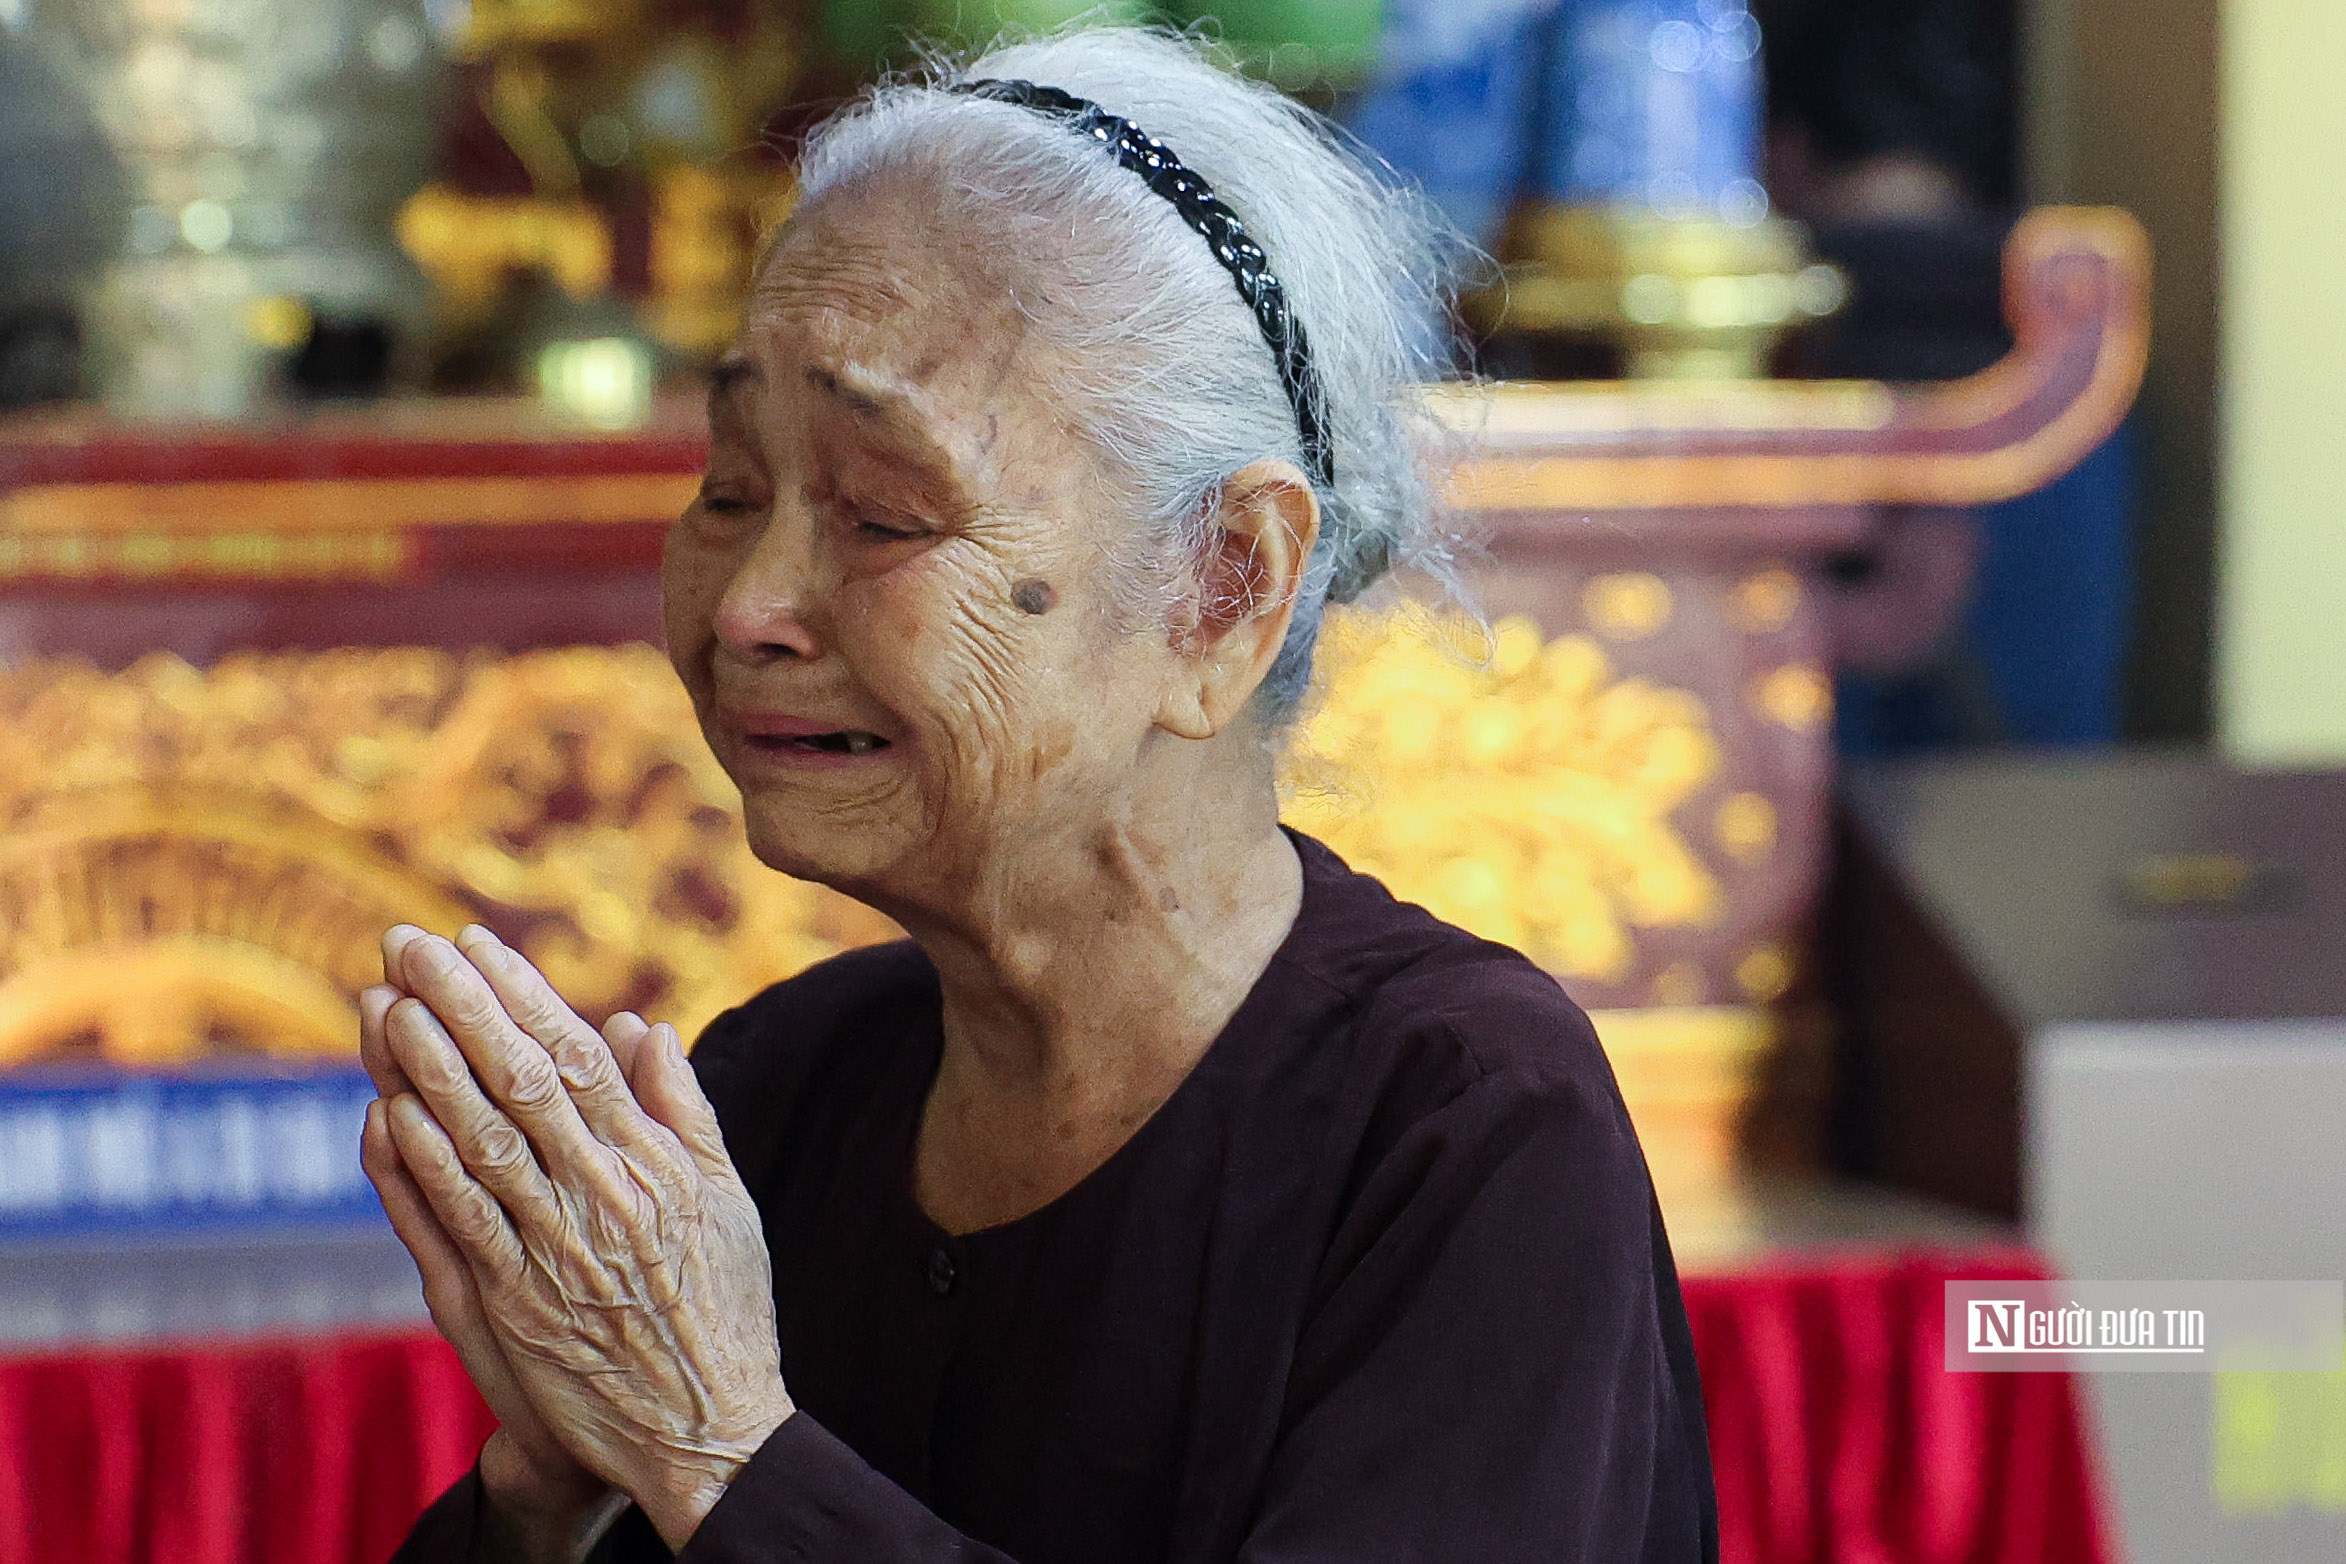 Người dân khóc nghẹn trước di ảnh Tổng Bí thư Nguyễn Phú Trọng- Ảnh 8.